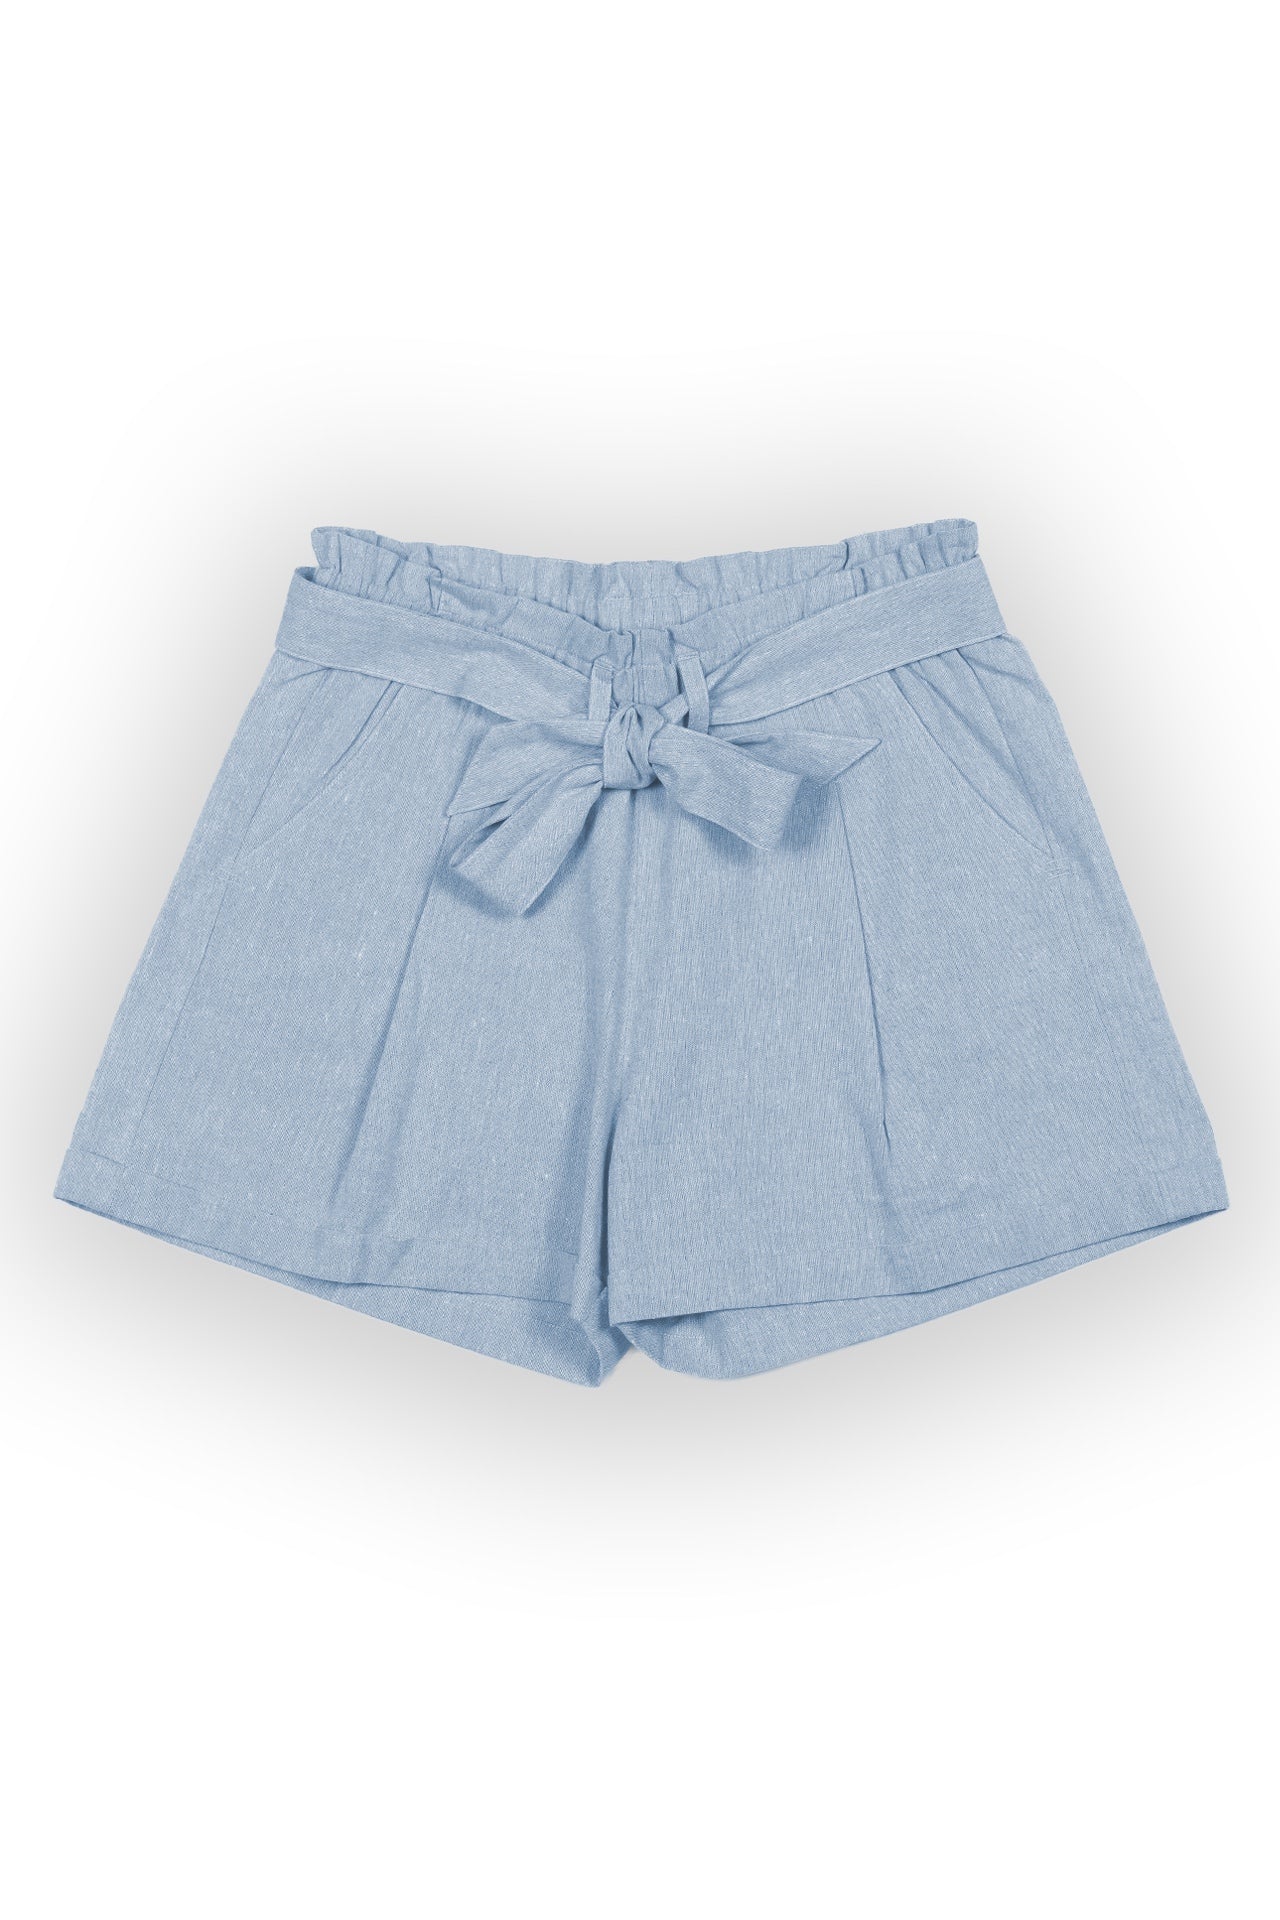 Mabel Chambray Paperbag Waist Shorts - Rupert and Buckley - Shorts